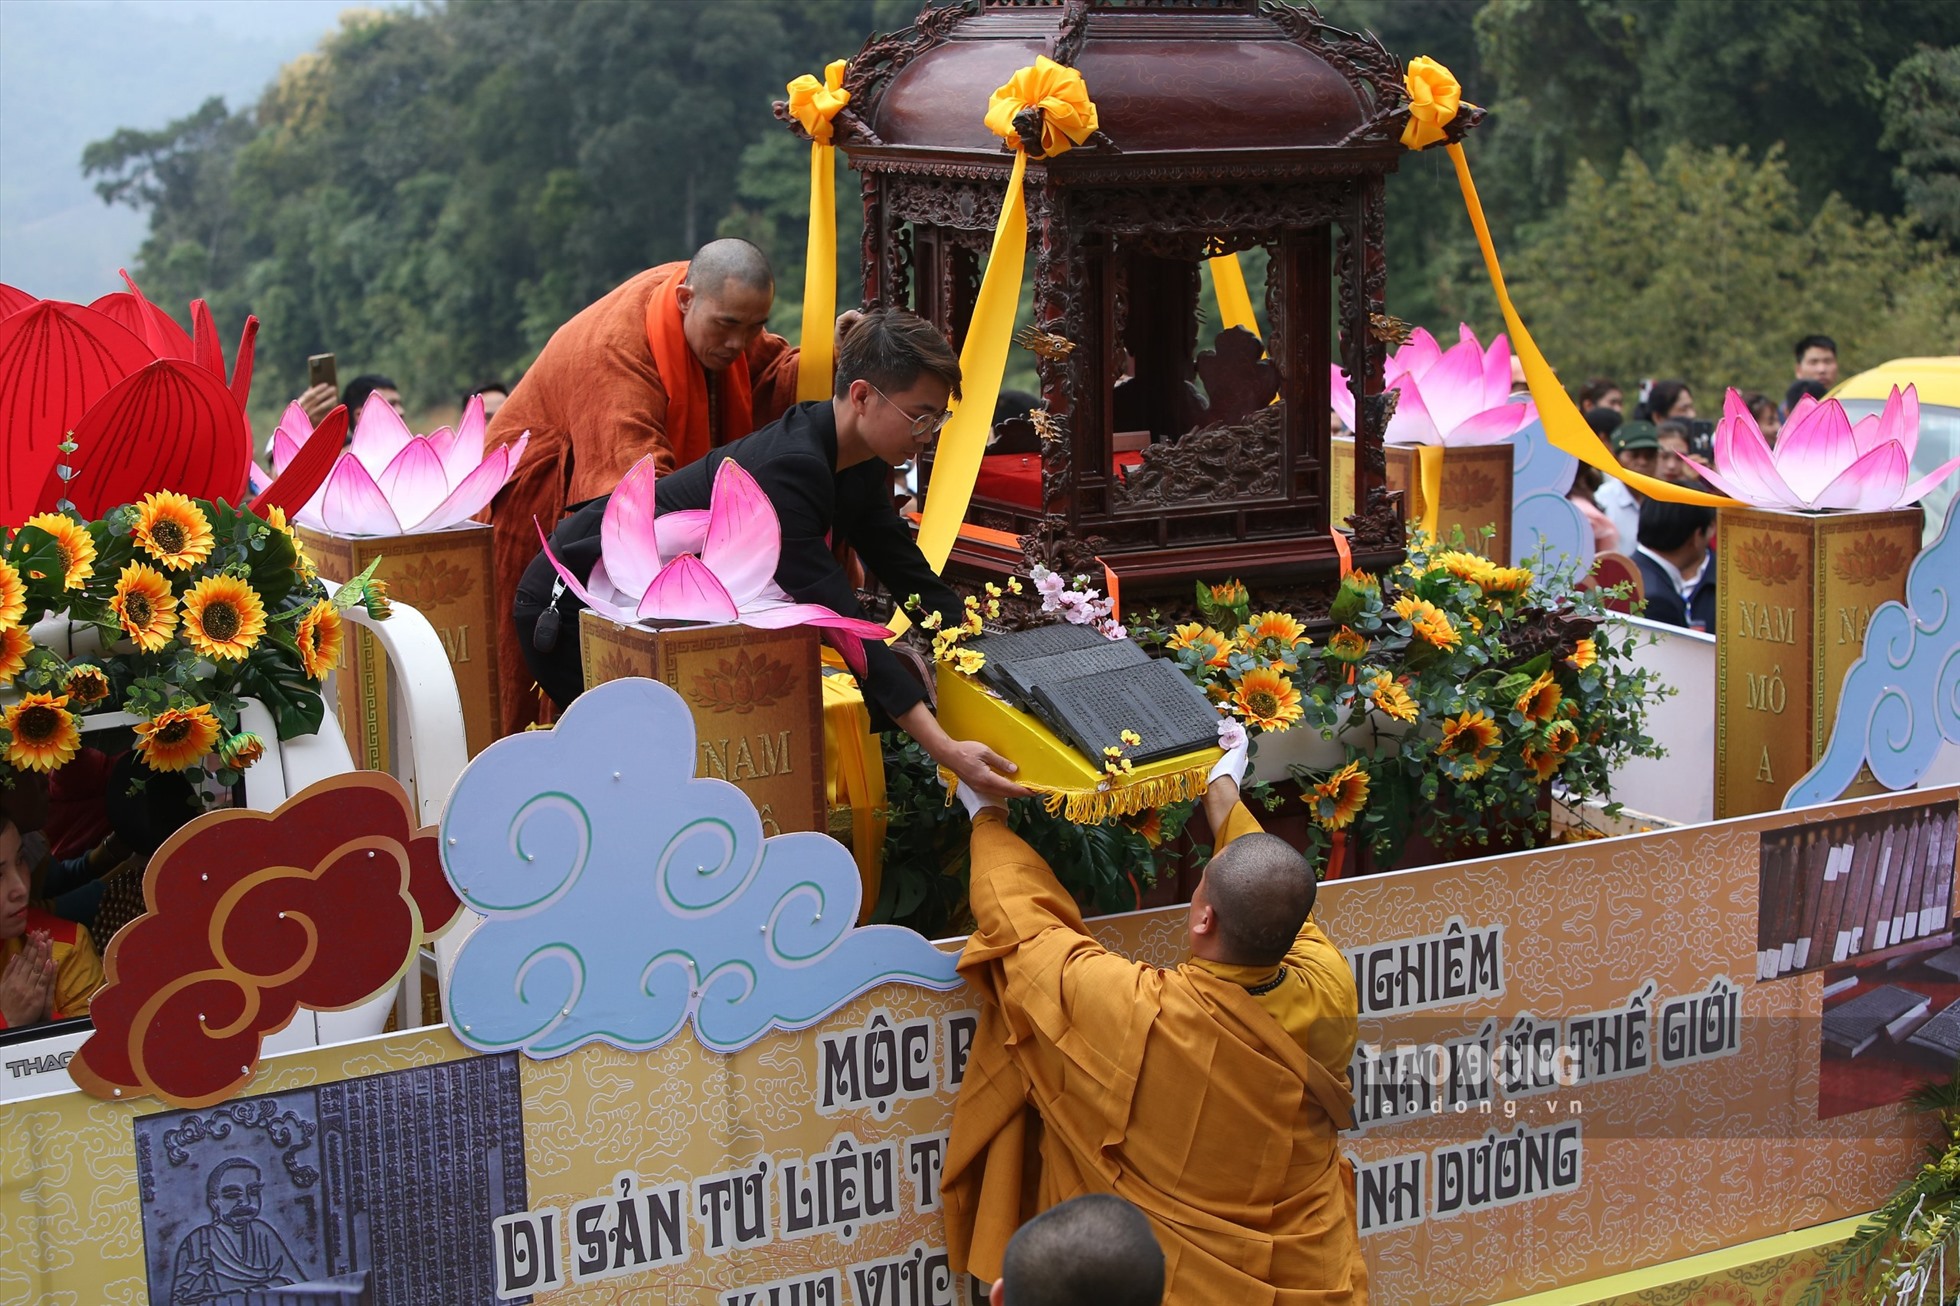 Mộc bản được thỉnh từ xe rước xuống nhà ga cáp treo Tây Yên Tử để rước lên chùa Thượng. ảnh: Nguyễn Kế